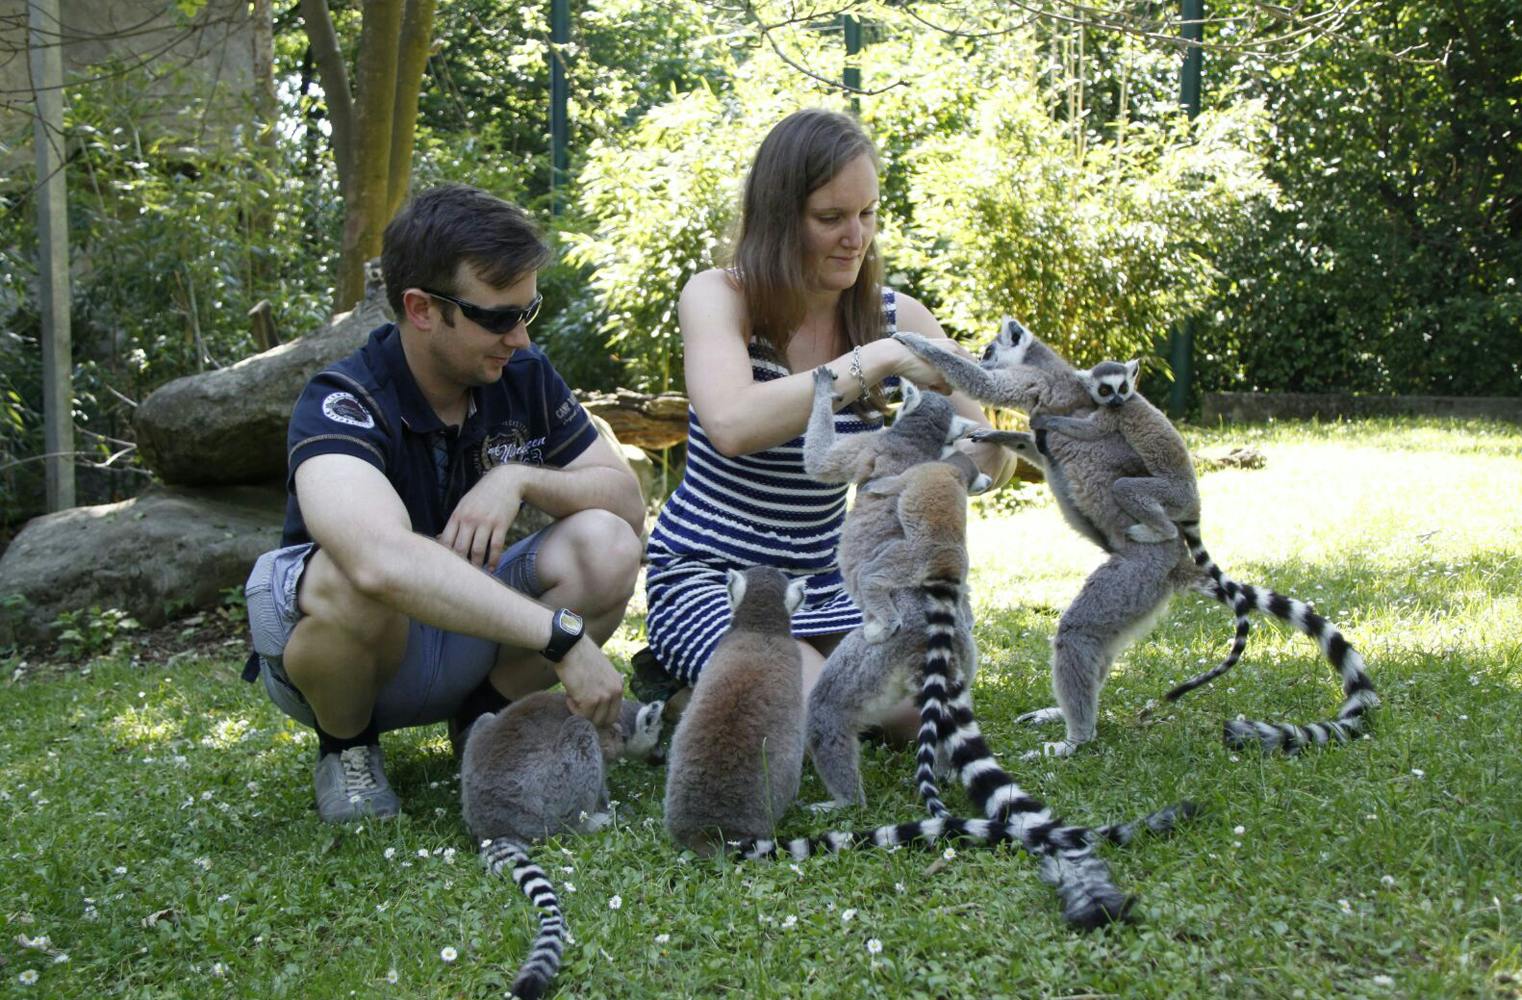 Kattas hautnah erleben | Lemuren füttern und streicheln